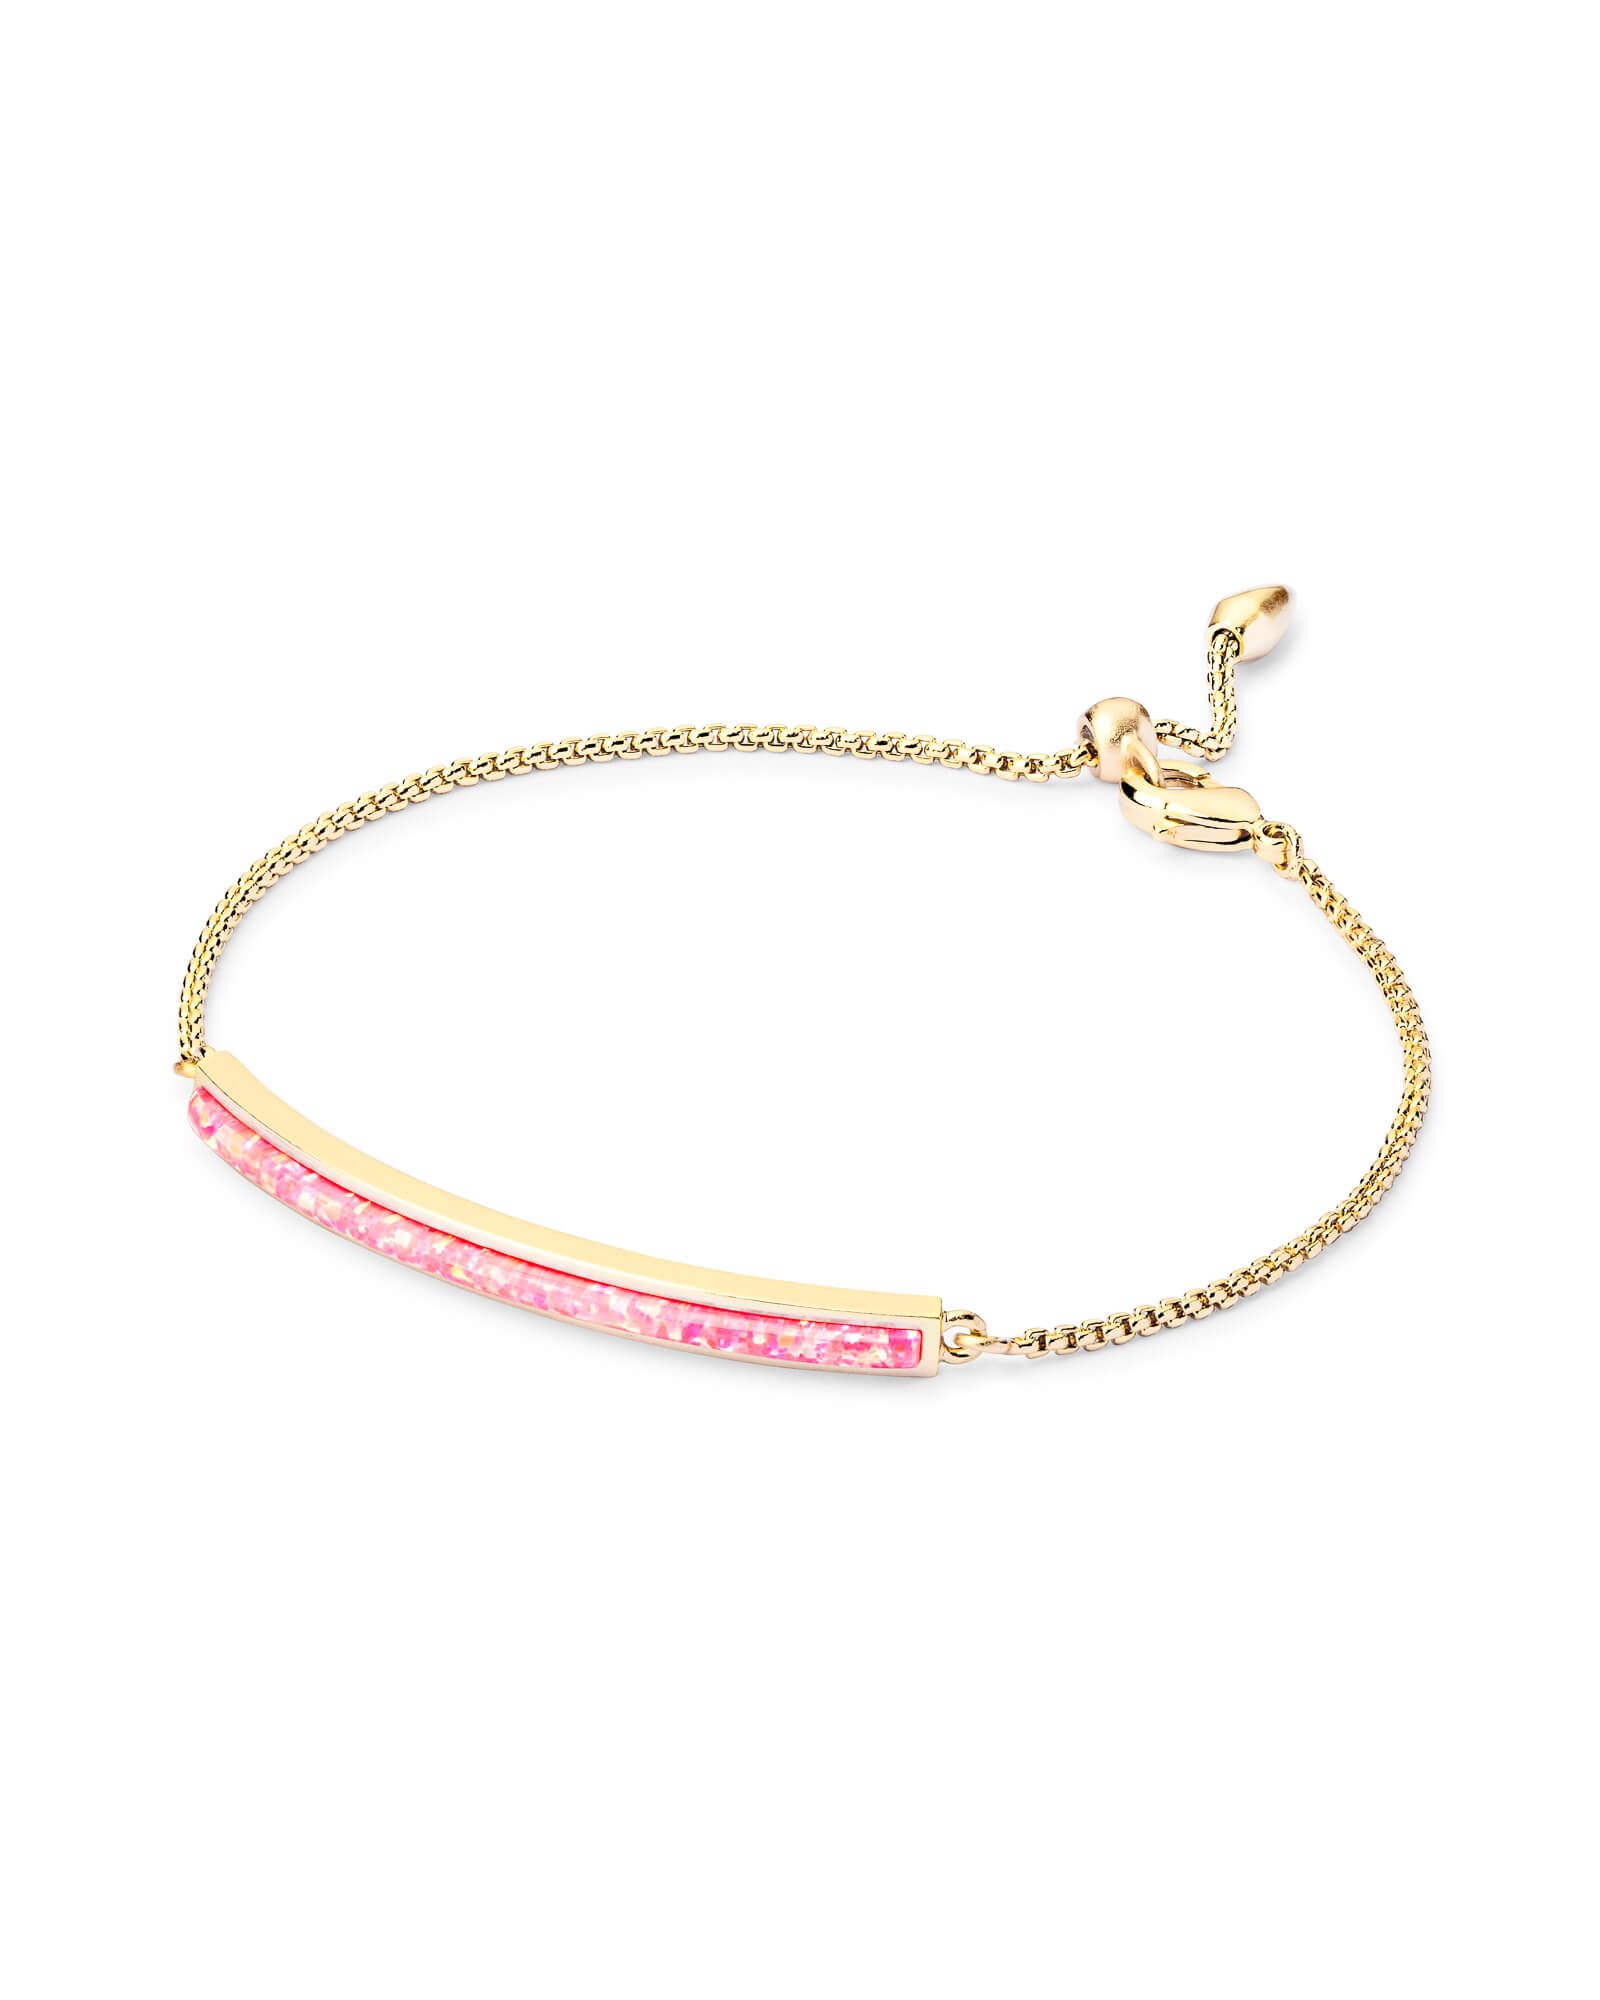 Eloise Ann Gold Chain Bracelet in Hot Pink Kyocera Opal | Kendra Scott